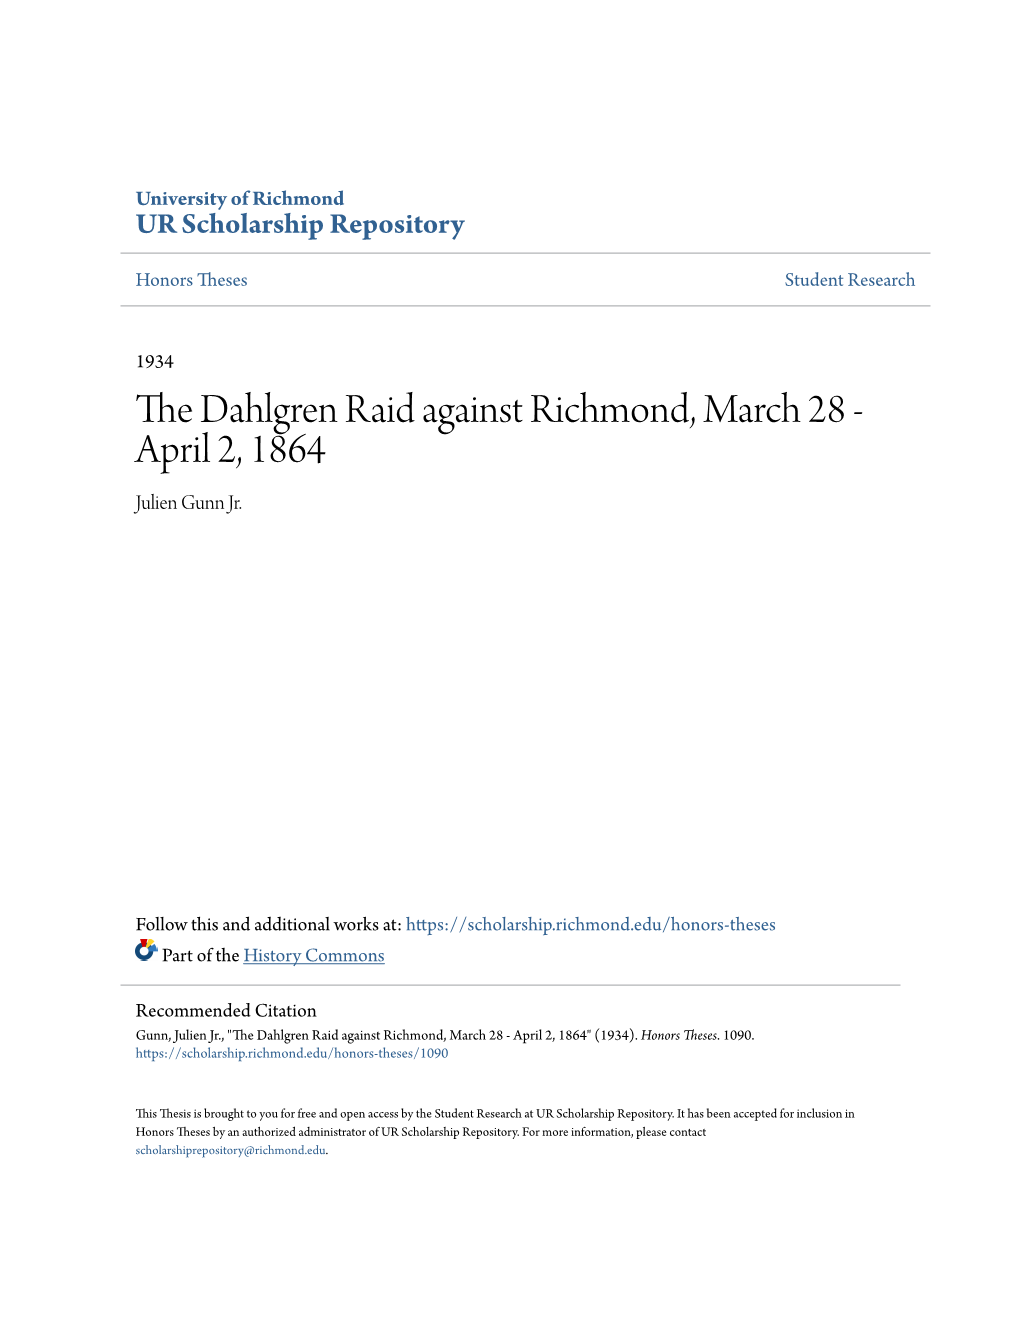 The Dahlgren Raid Against Richmond